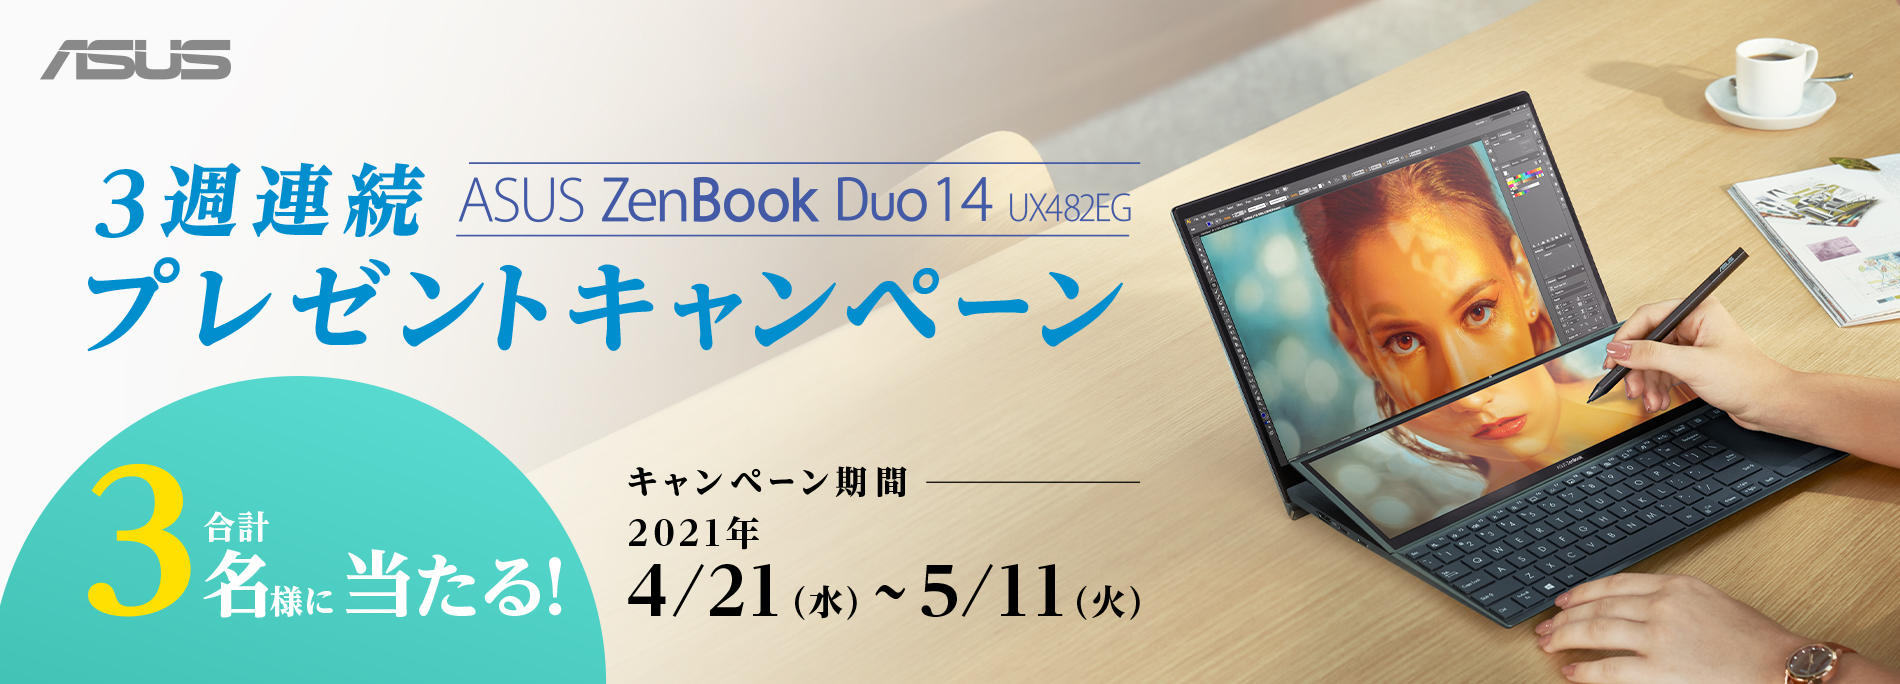 3週連続でasus Zenbook Duo 14 が計3台当たる プレゼントキャンペーン